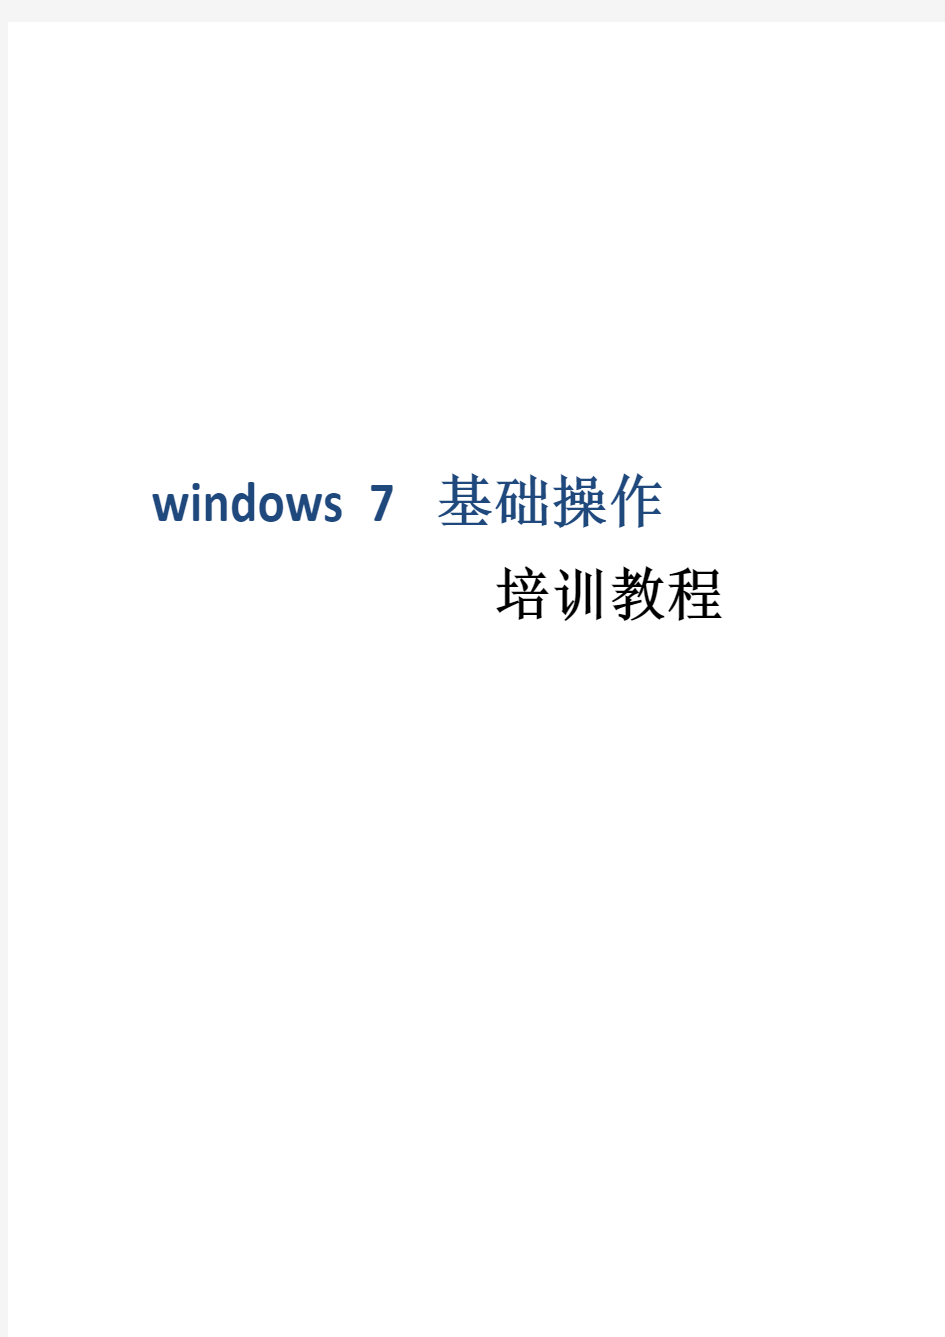 2017年Windows7基础操作培训教程